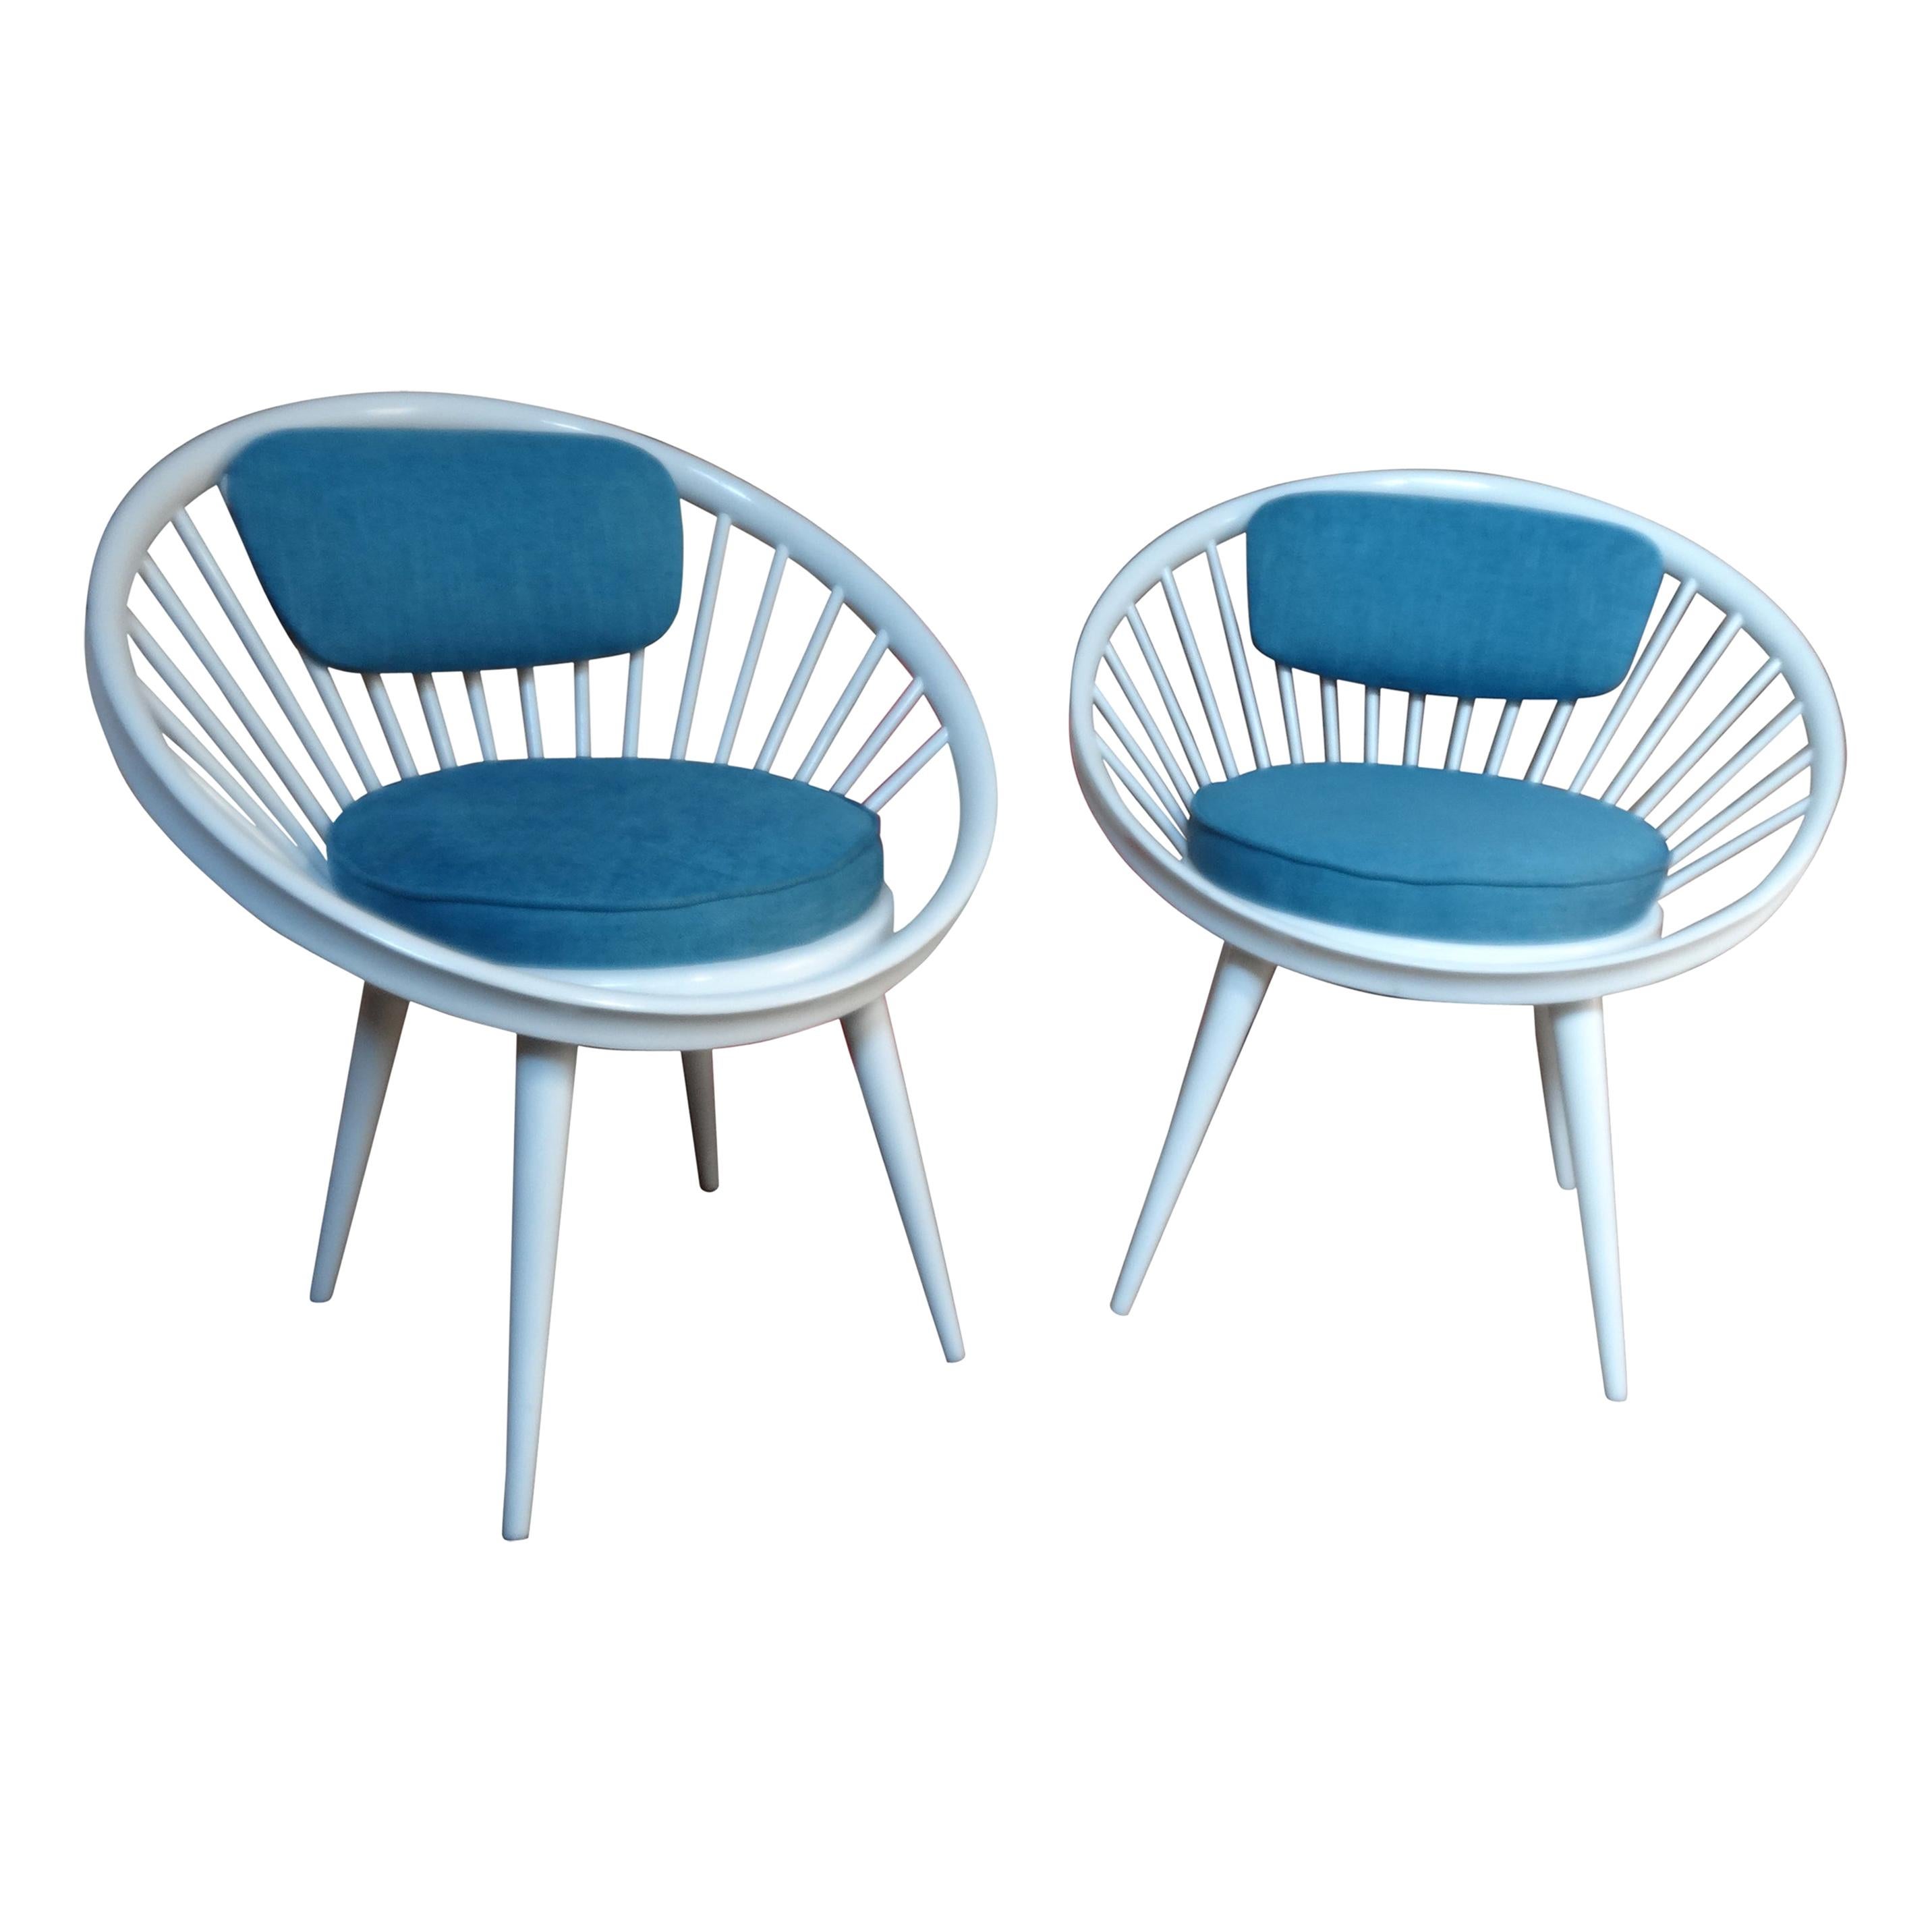 20. Jahrhundert Yngve Ekström Entworfen für Swedese Retro 1960s Circle Chairs